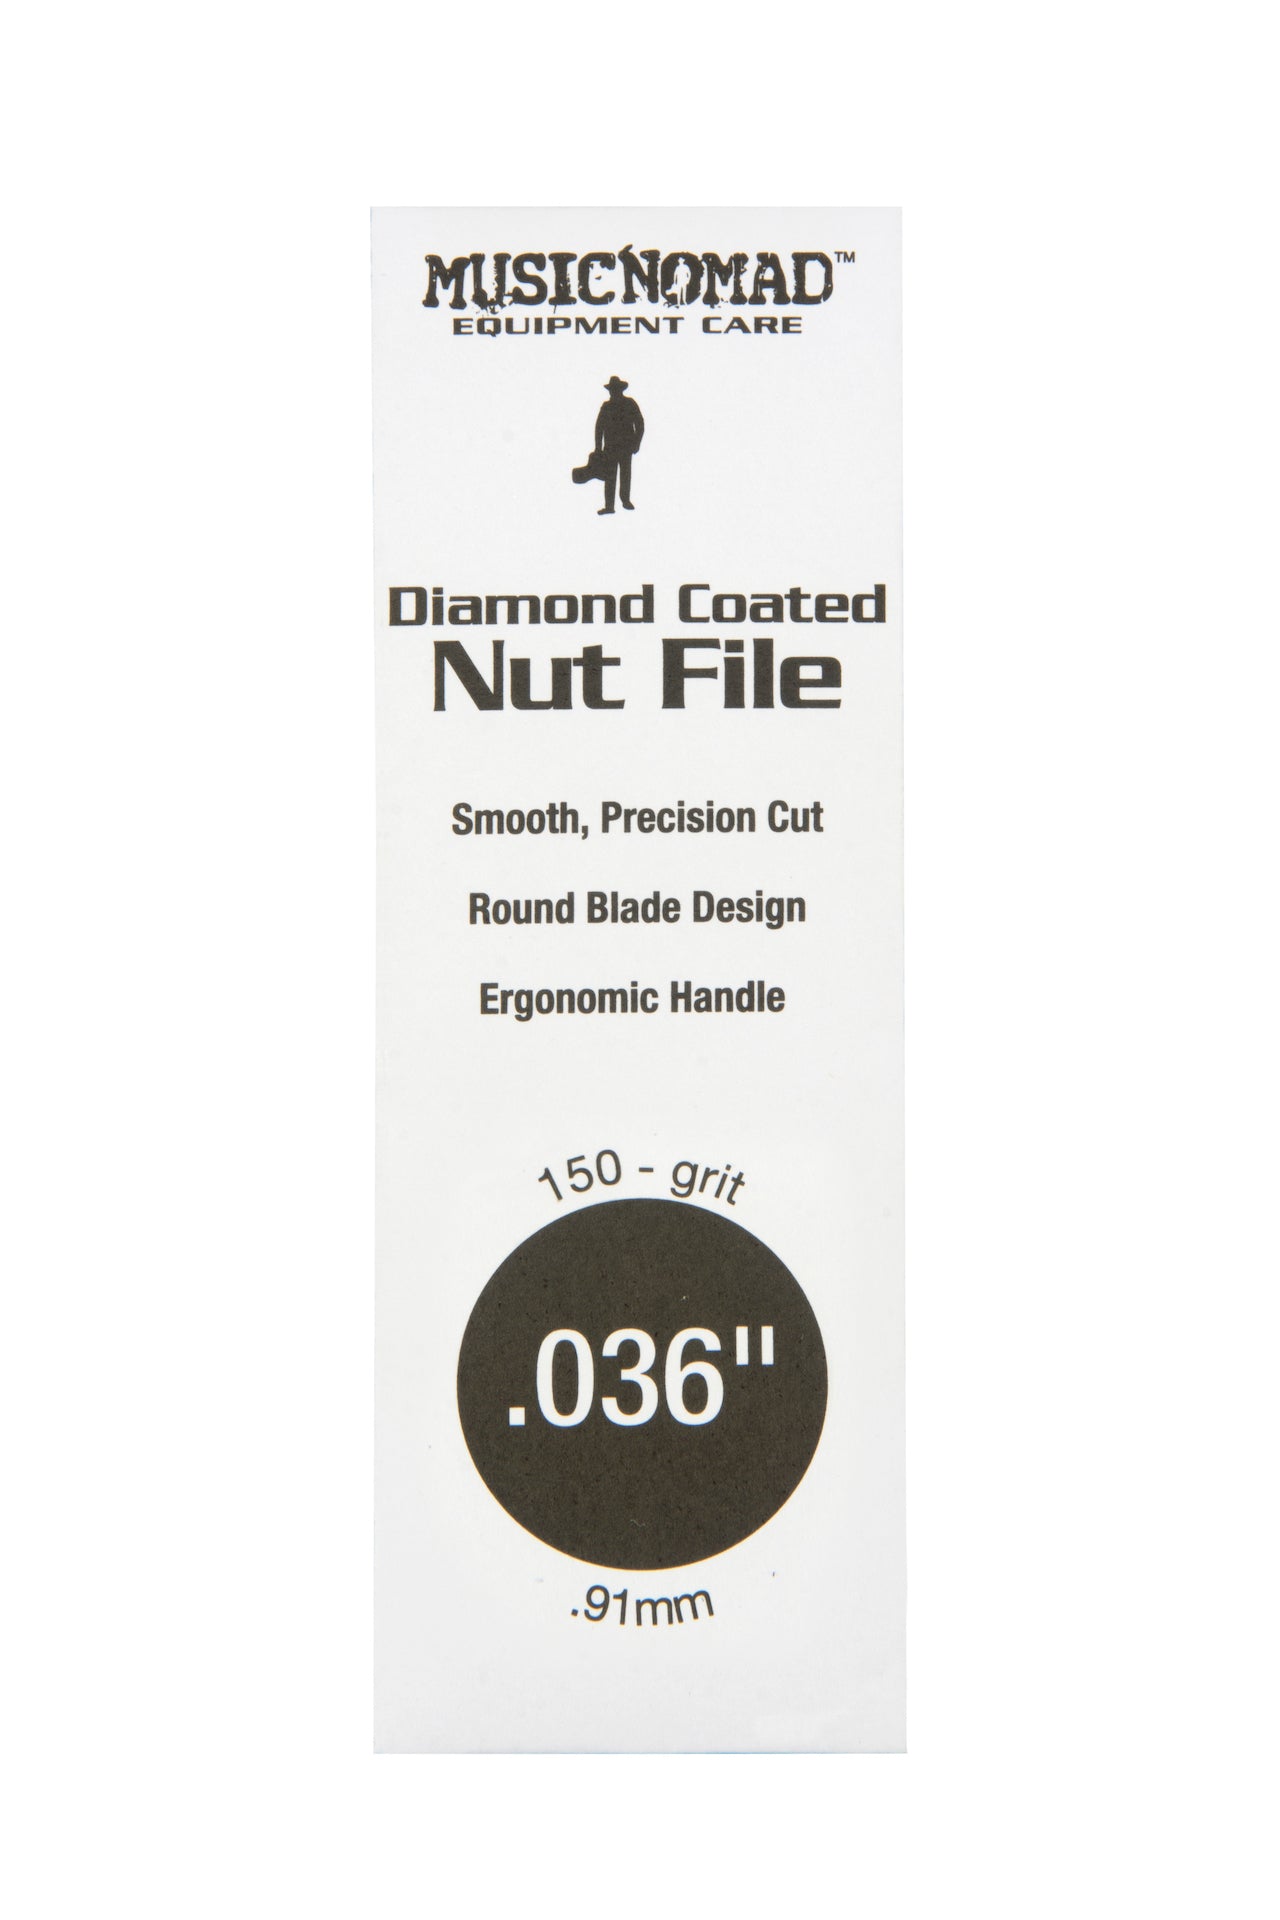 Music Nomad Diamond Coated Nut File Singles - HIENDGUITAR .036" .036" musicnomad musicnomad